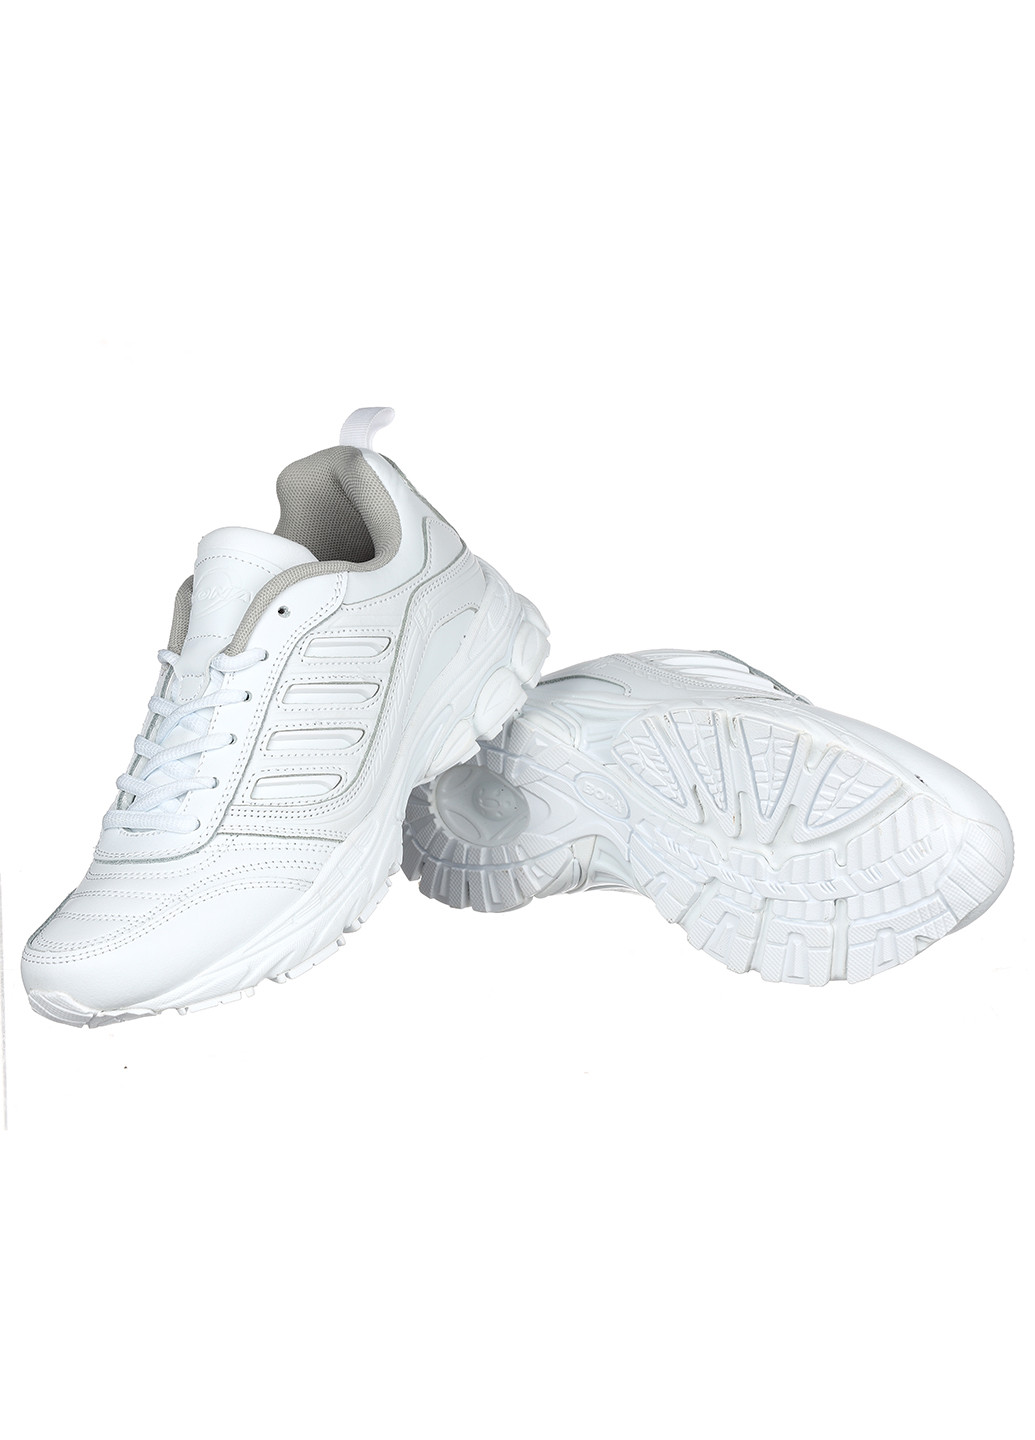 Білі осінні шкіряні жіночі кросівки Bona 628Х-2